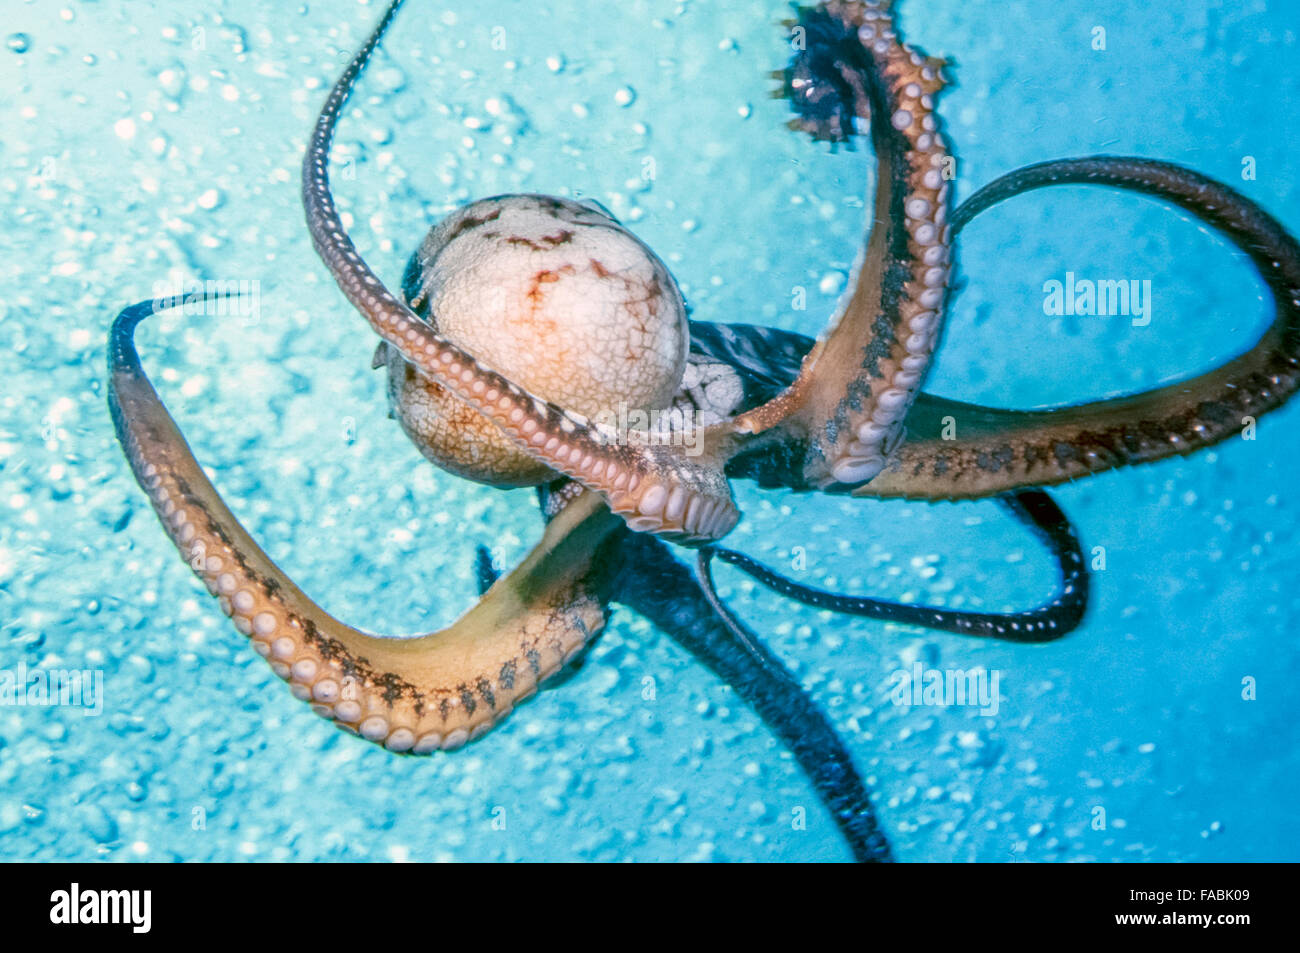 Octopus ornementé,Callistoctopus ornatus est une espèce tropicale d'octopus originaire de la région indo-pacifique Banque D'Images